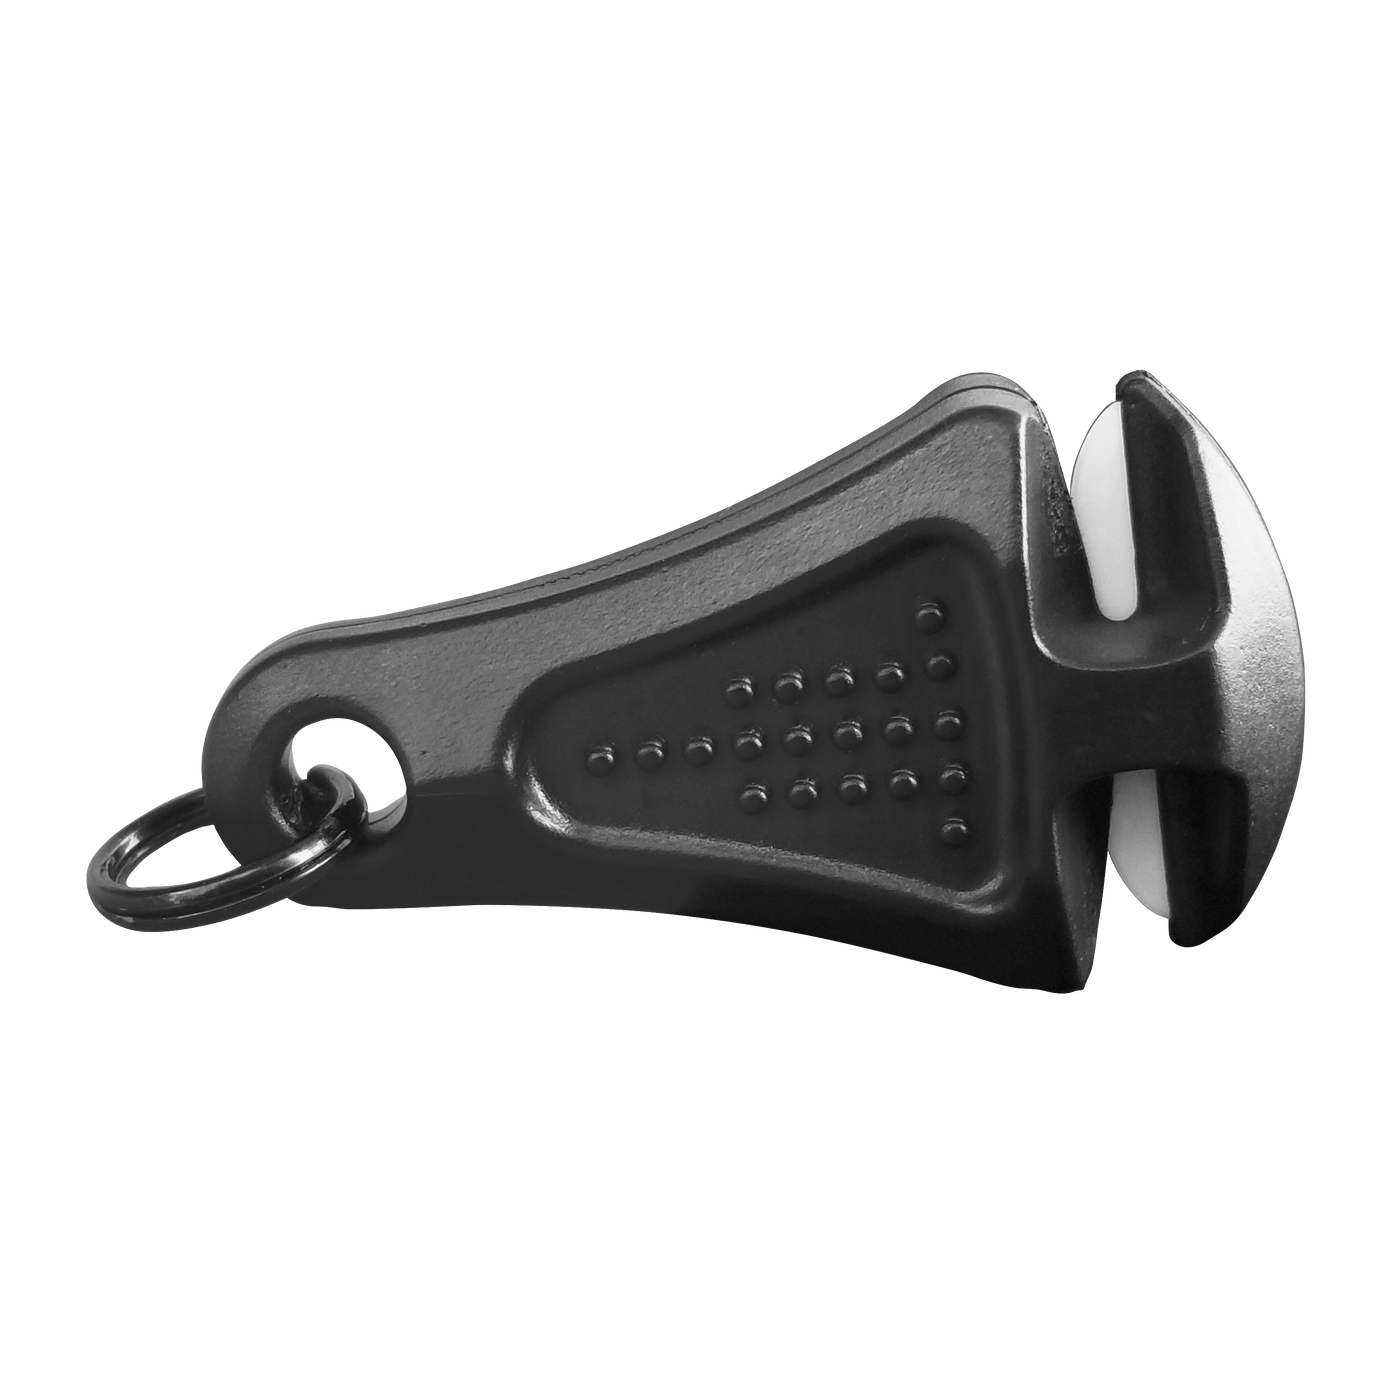 NEW RELEASE! - Line Cutterz Ceramic Blade Zipper Pull Cutter Zipper Pull Line Cutterz 